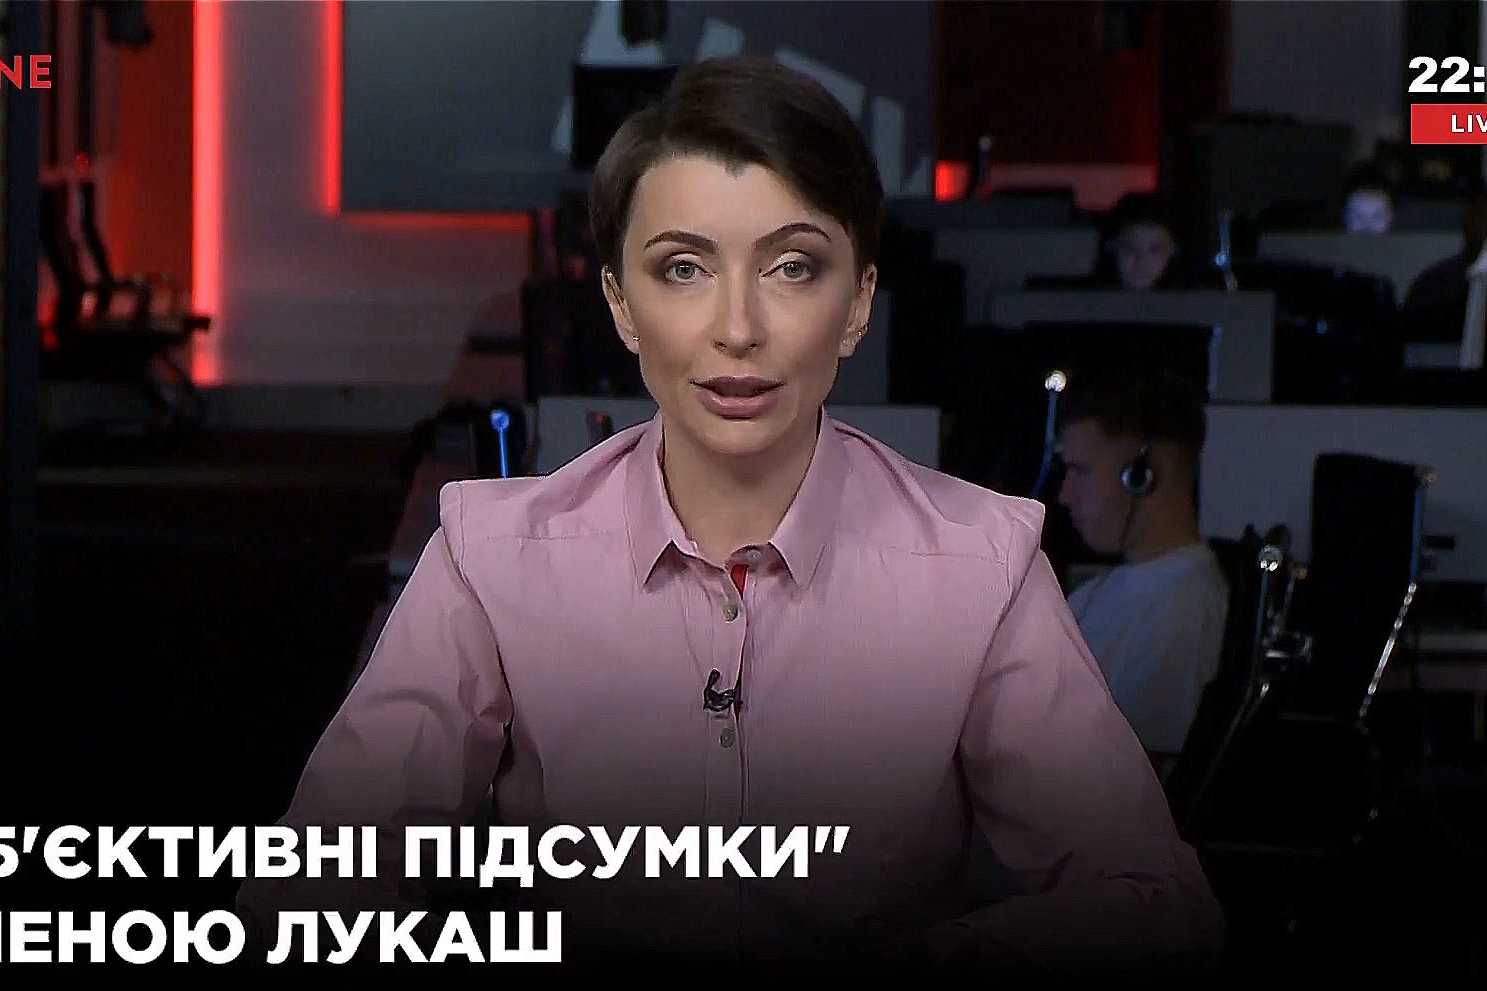 Елену Лукаш вызывают в ГПУ - экс-регионалка выступила с угрозами